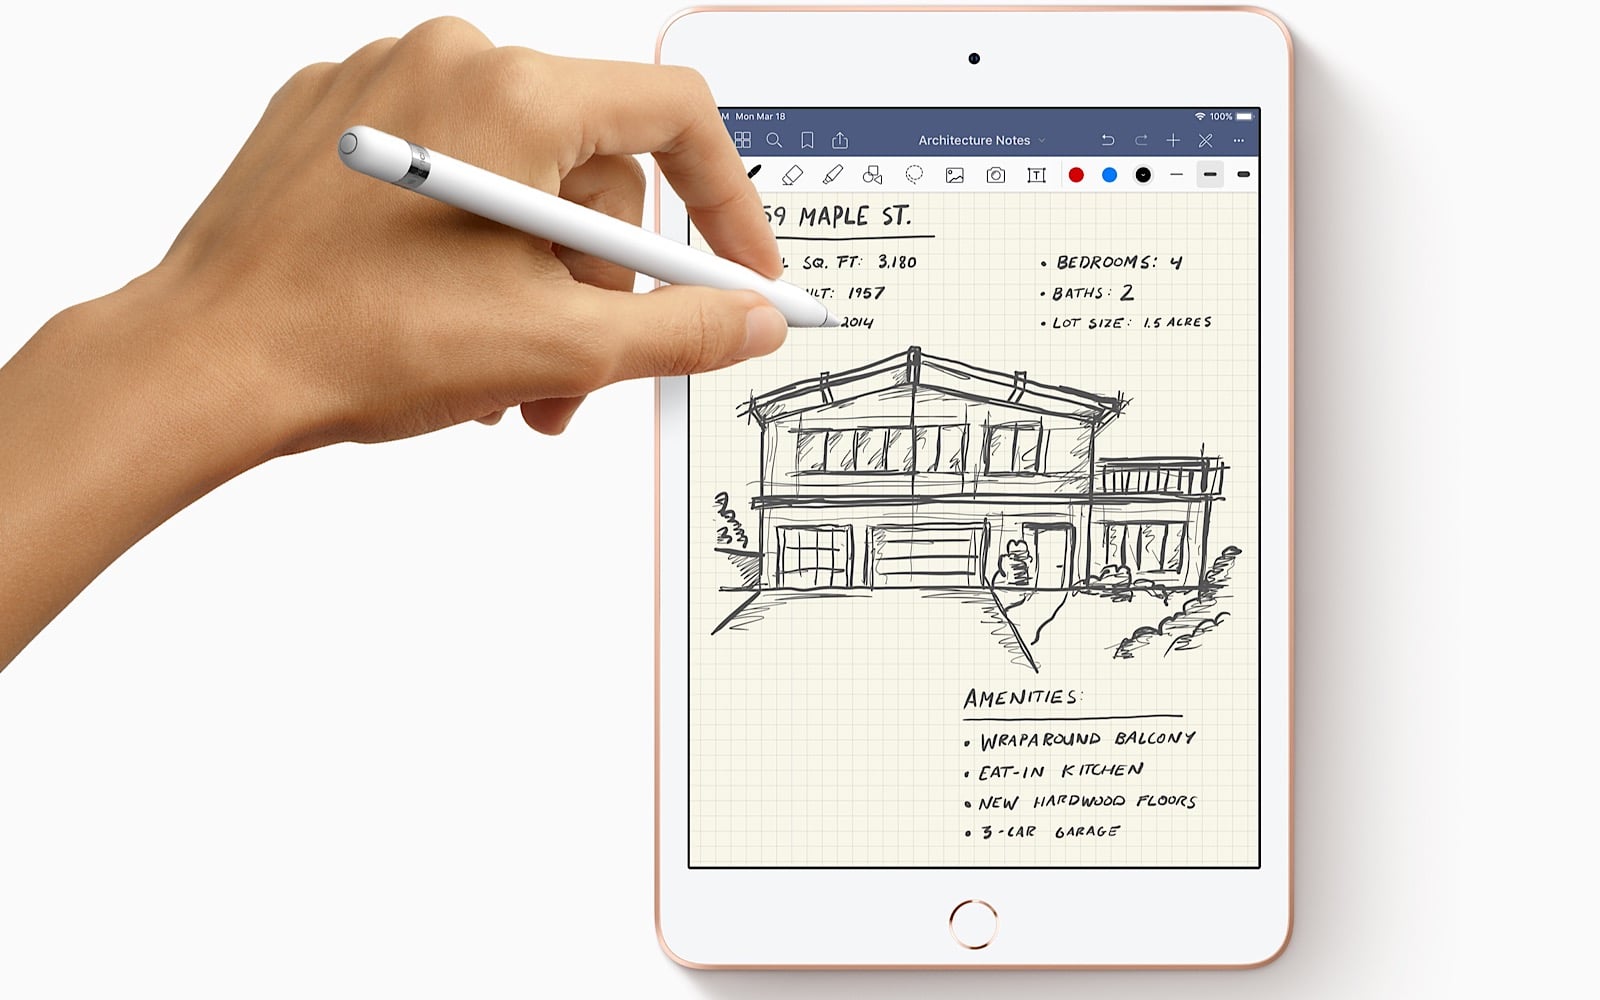 Apple iPad Mini (2019)